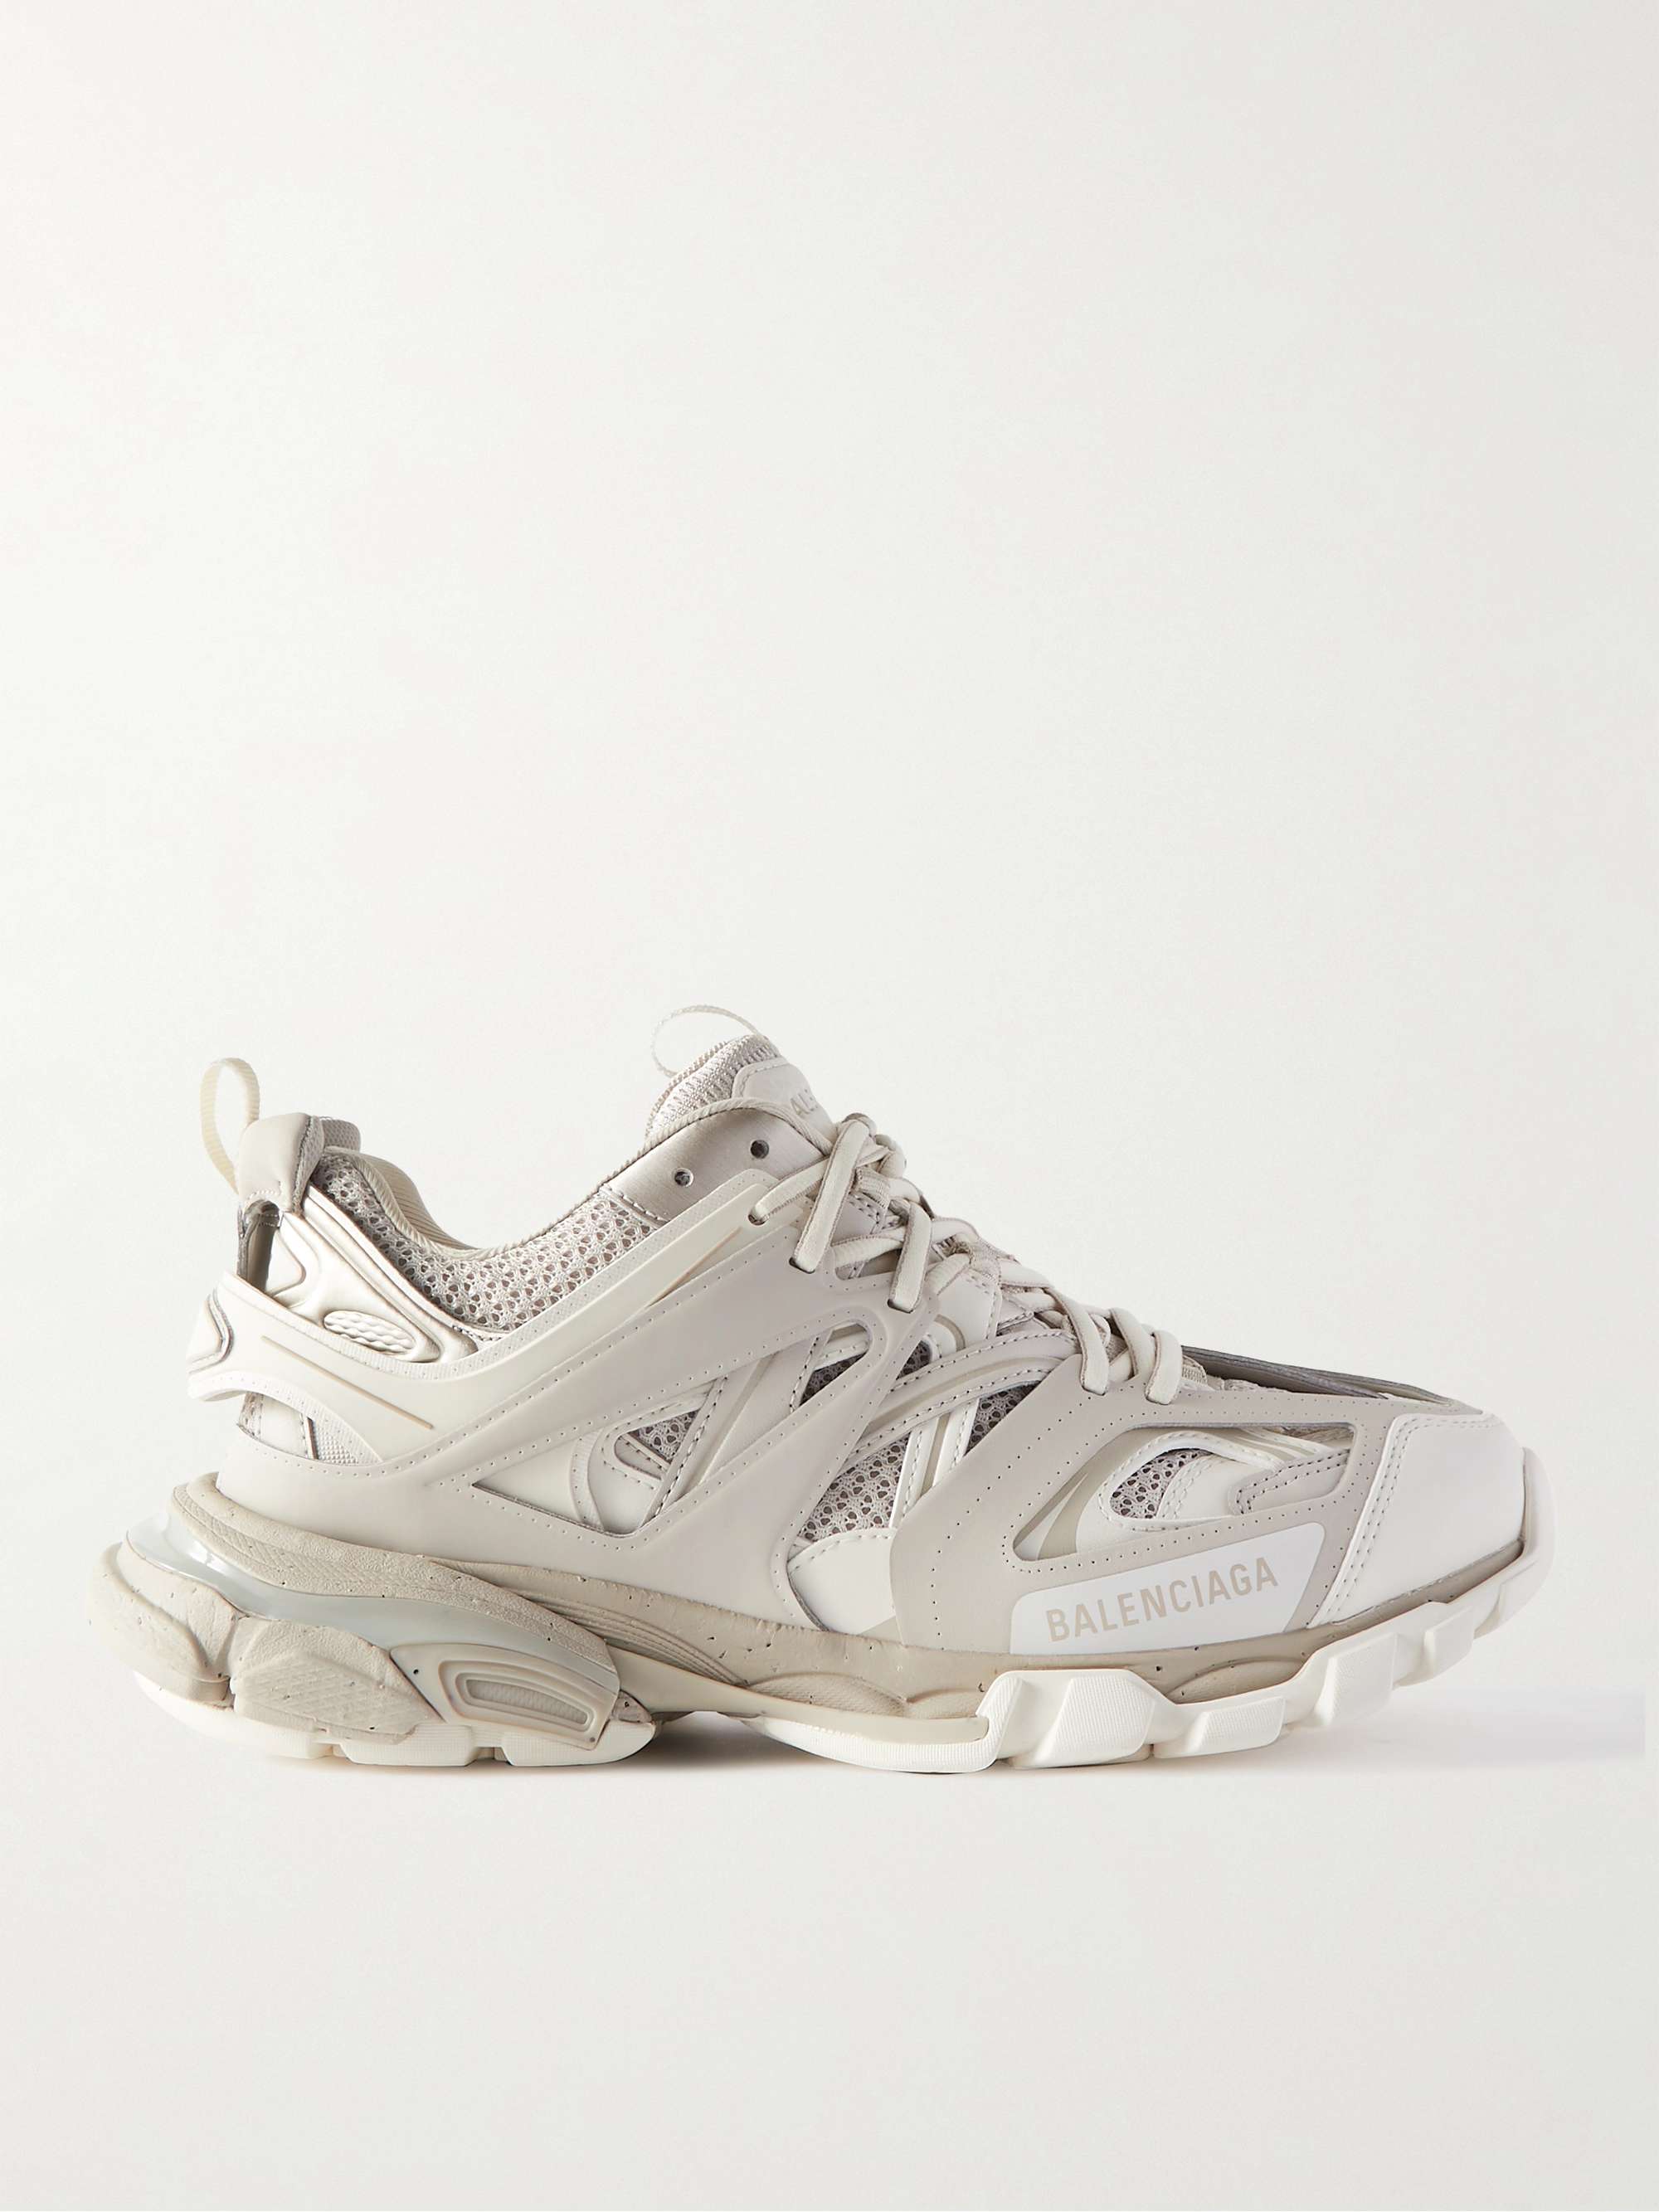 Off-white Track Nylon, Mesh and Rubber Sneakers | BALENCIAGA | MR PORTER